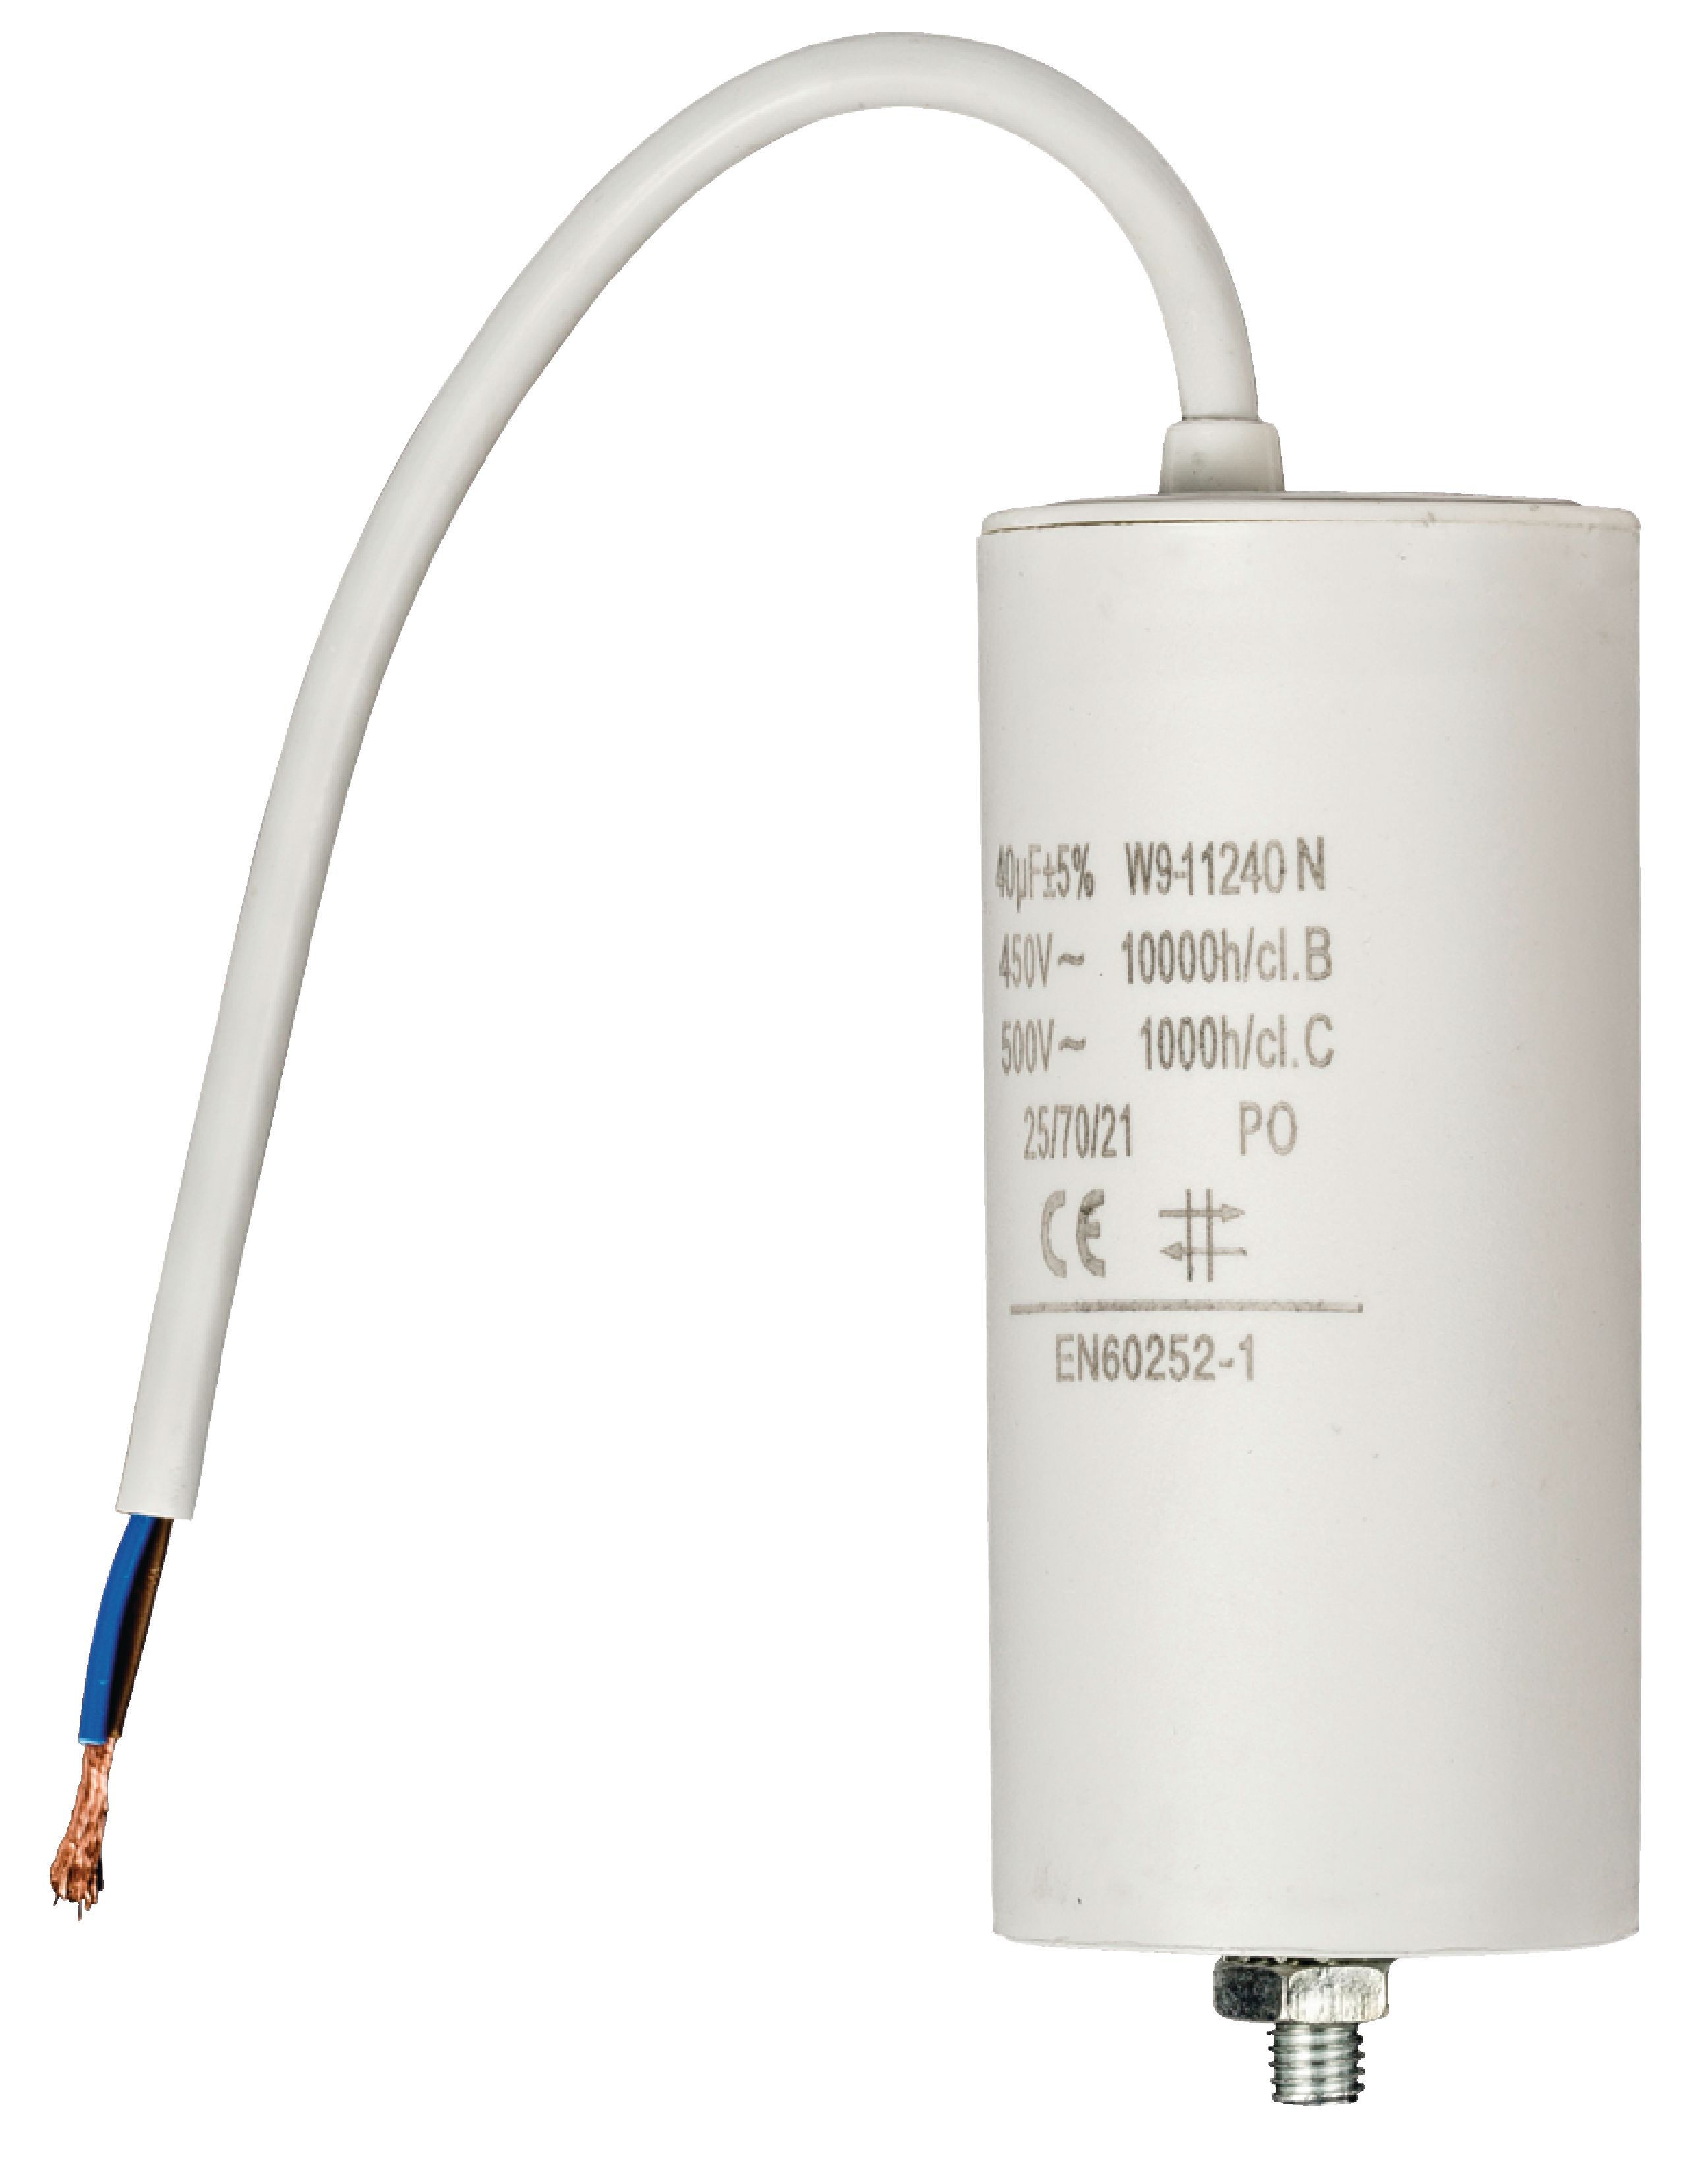 Kondenzátor rozběhový 40uf / 450 V s kabelem (W9-11240N)